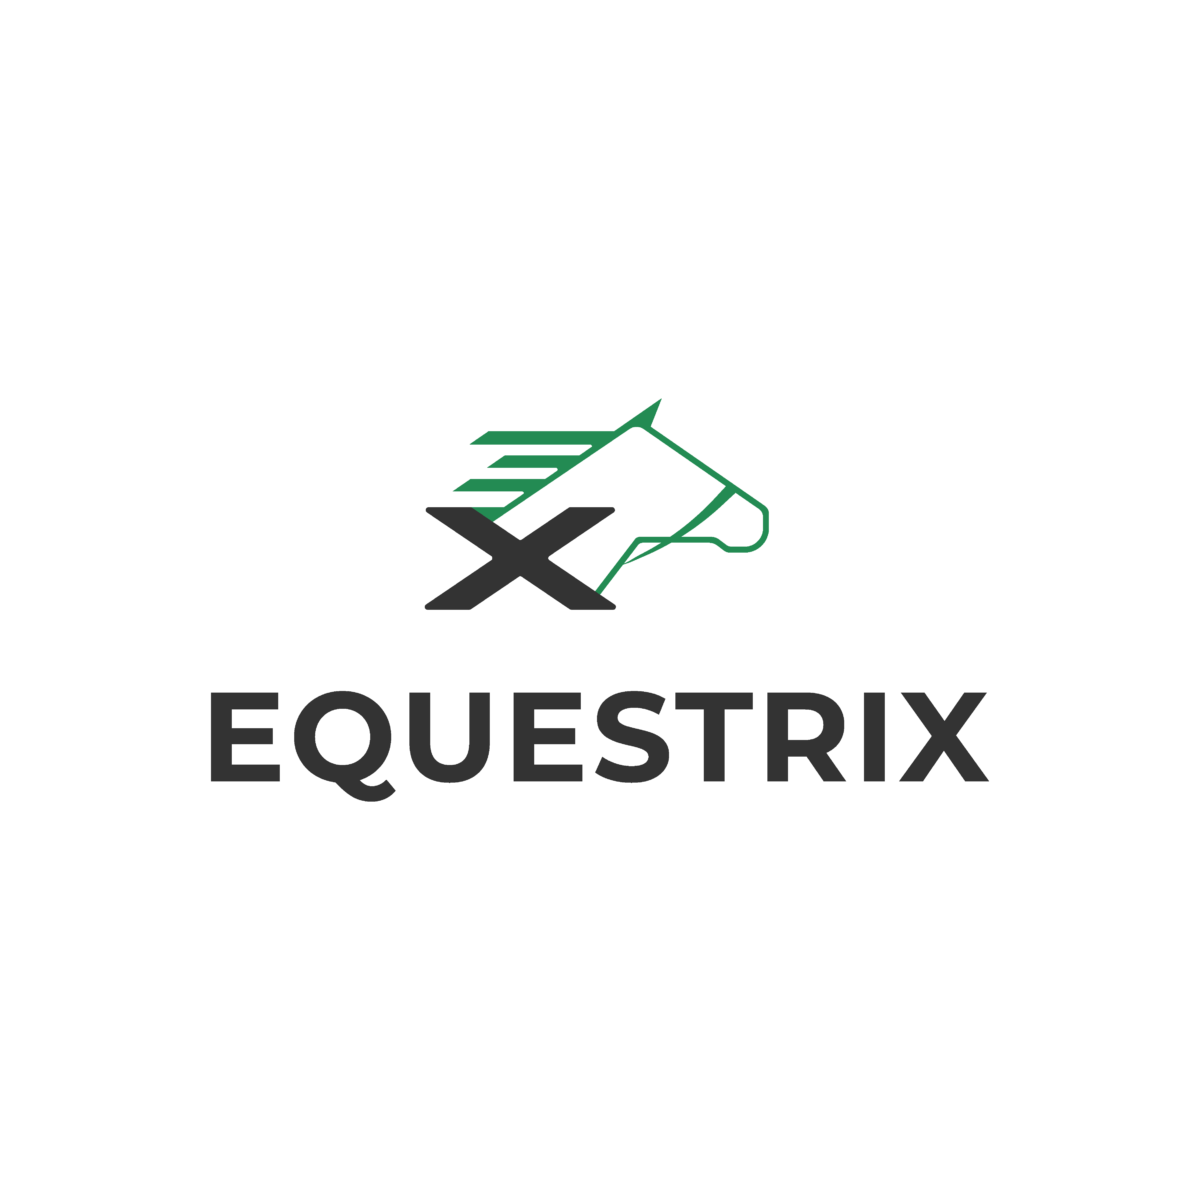 Equestrix